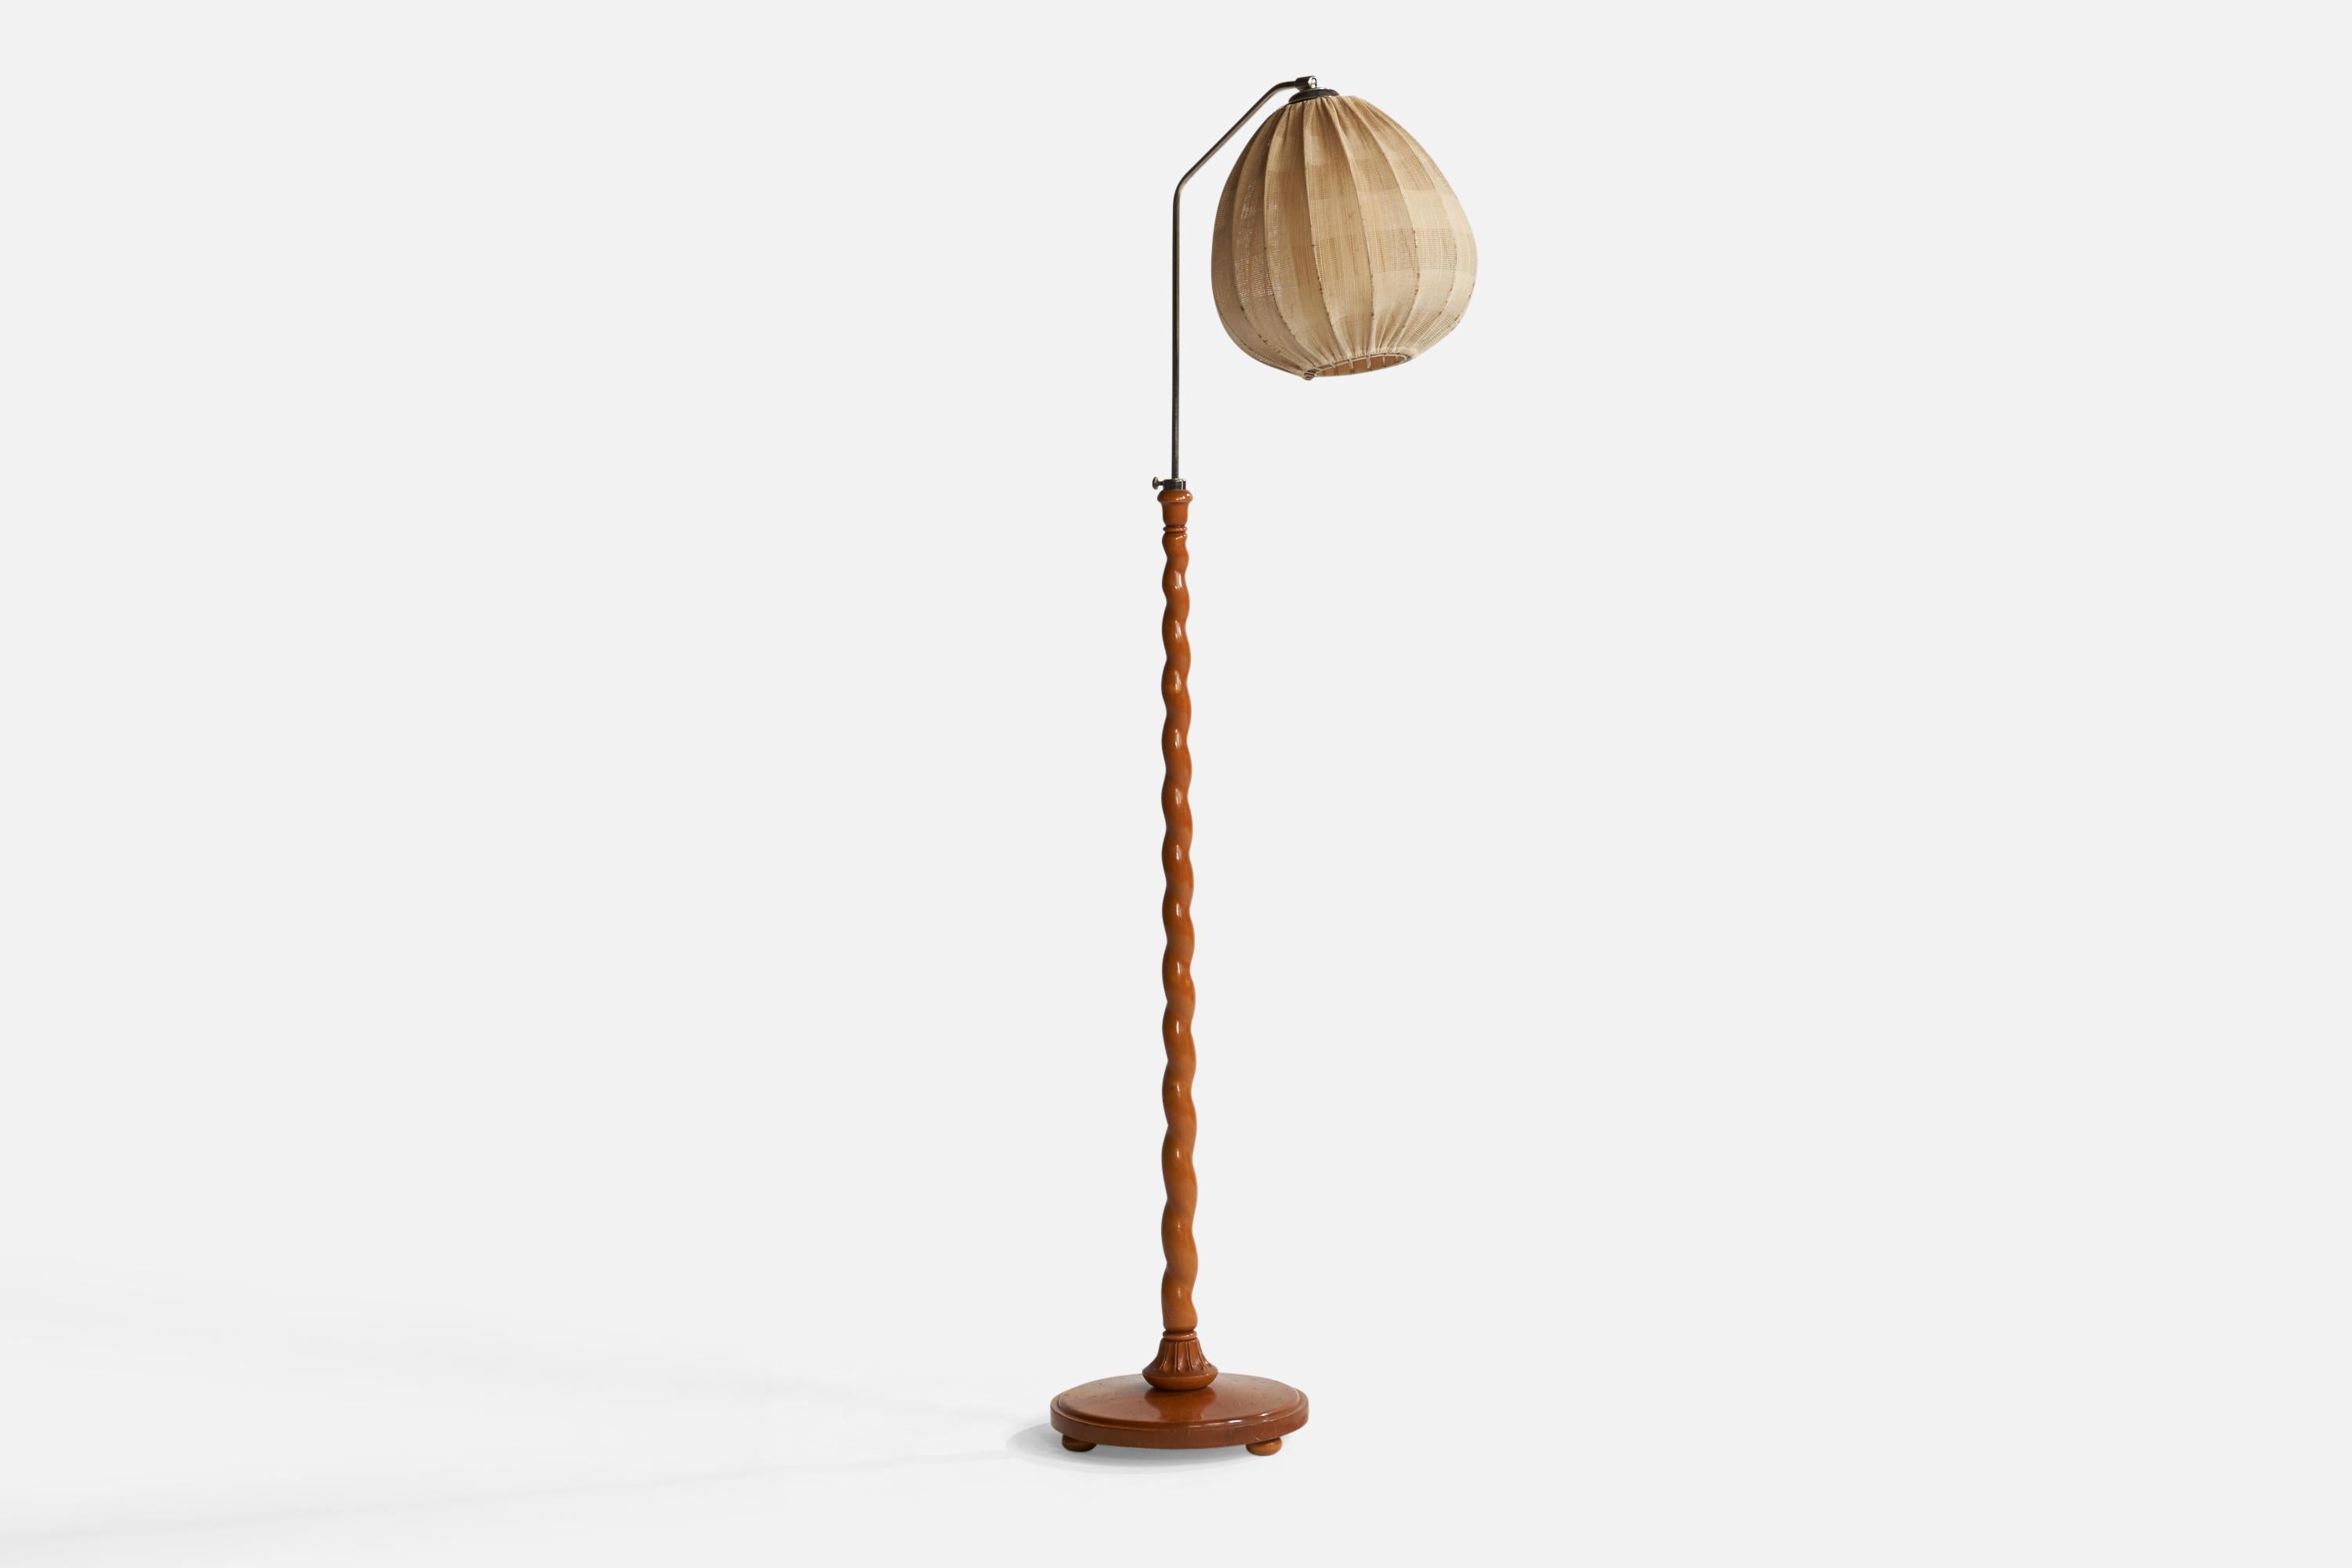 Stehlampe aus Holz, Stoff und verchromtem Metall, entworfen und hergestellt in Schweden, ca. 1930er Jahre.

Gesamtabmessungen (Zoll): 59